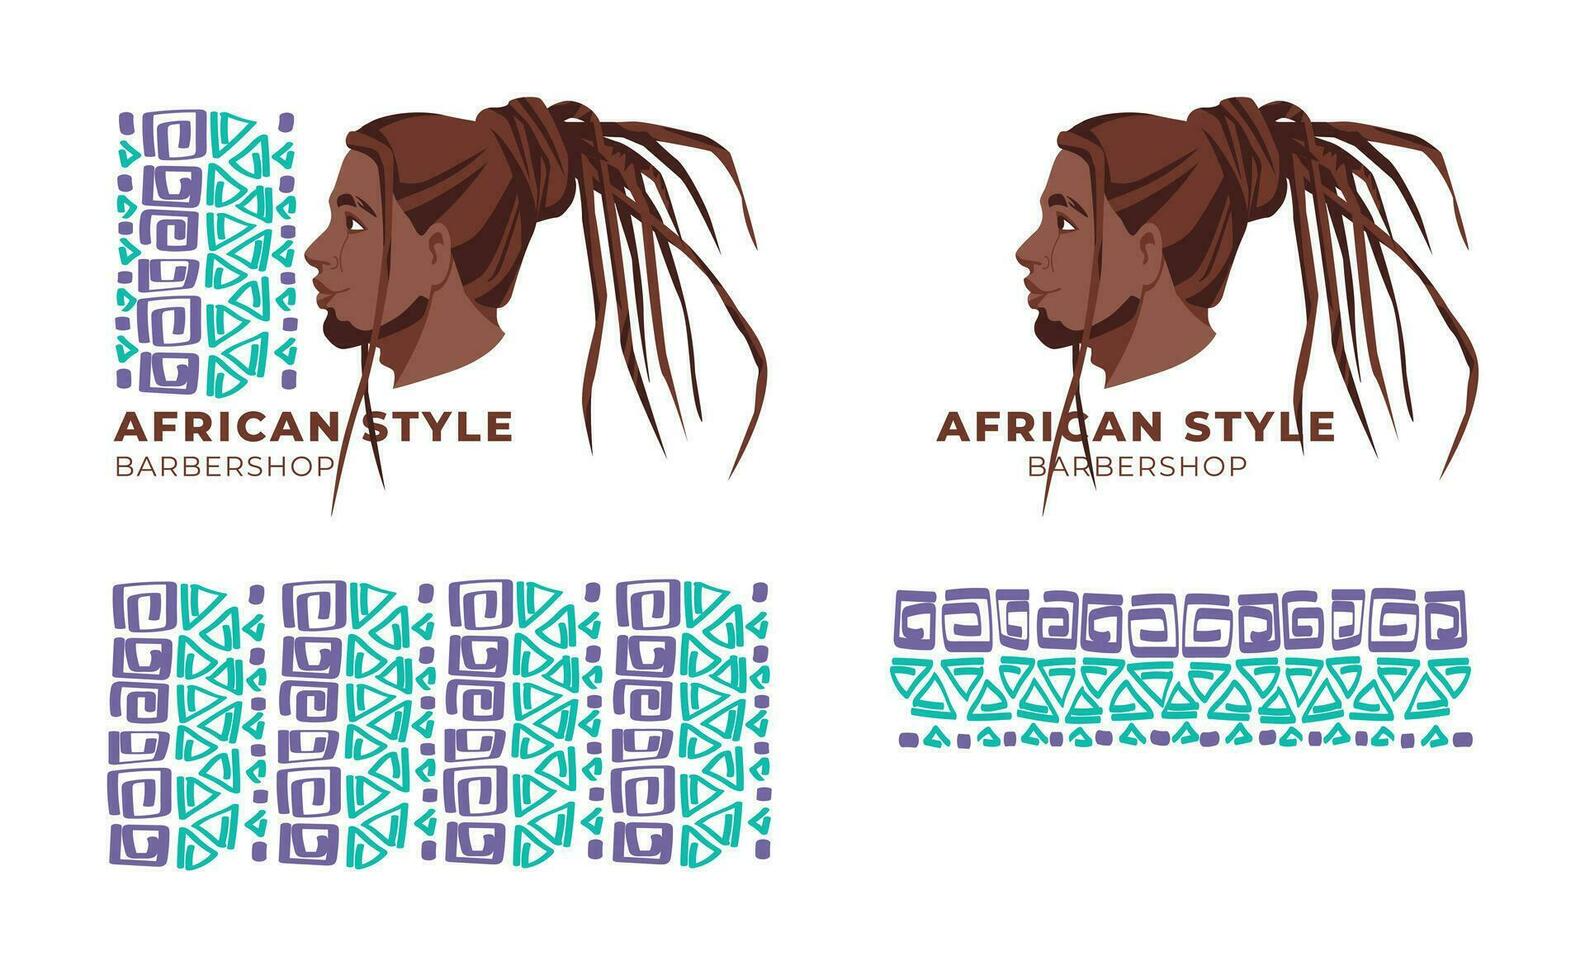 schoonheid salon logo en identiteit. vlak vector illustratie van mannen gezicht. traditioneel gekruld kapsels van Afrikaanse Amerikaans Heren.